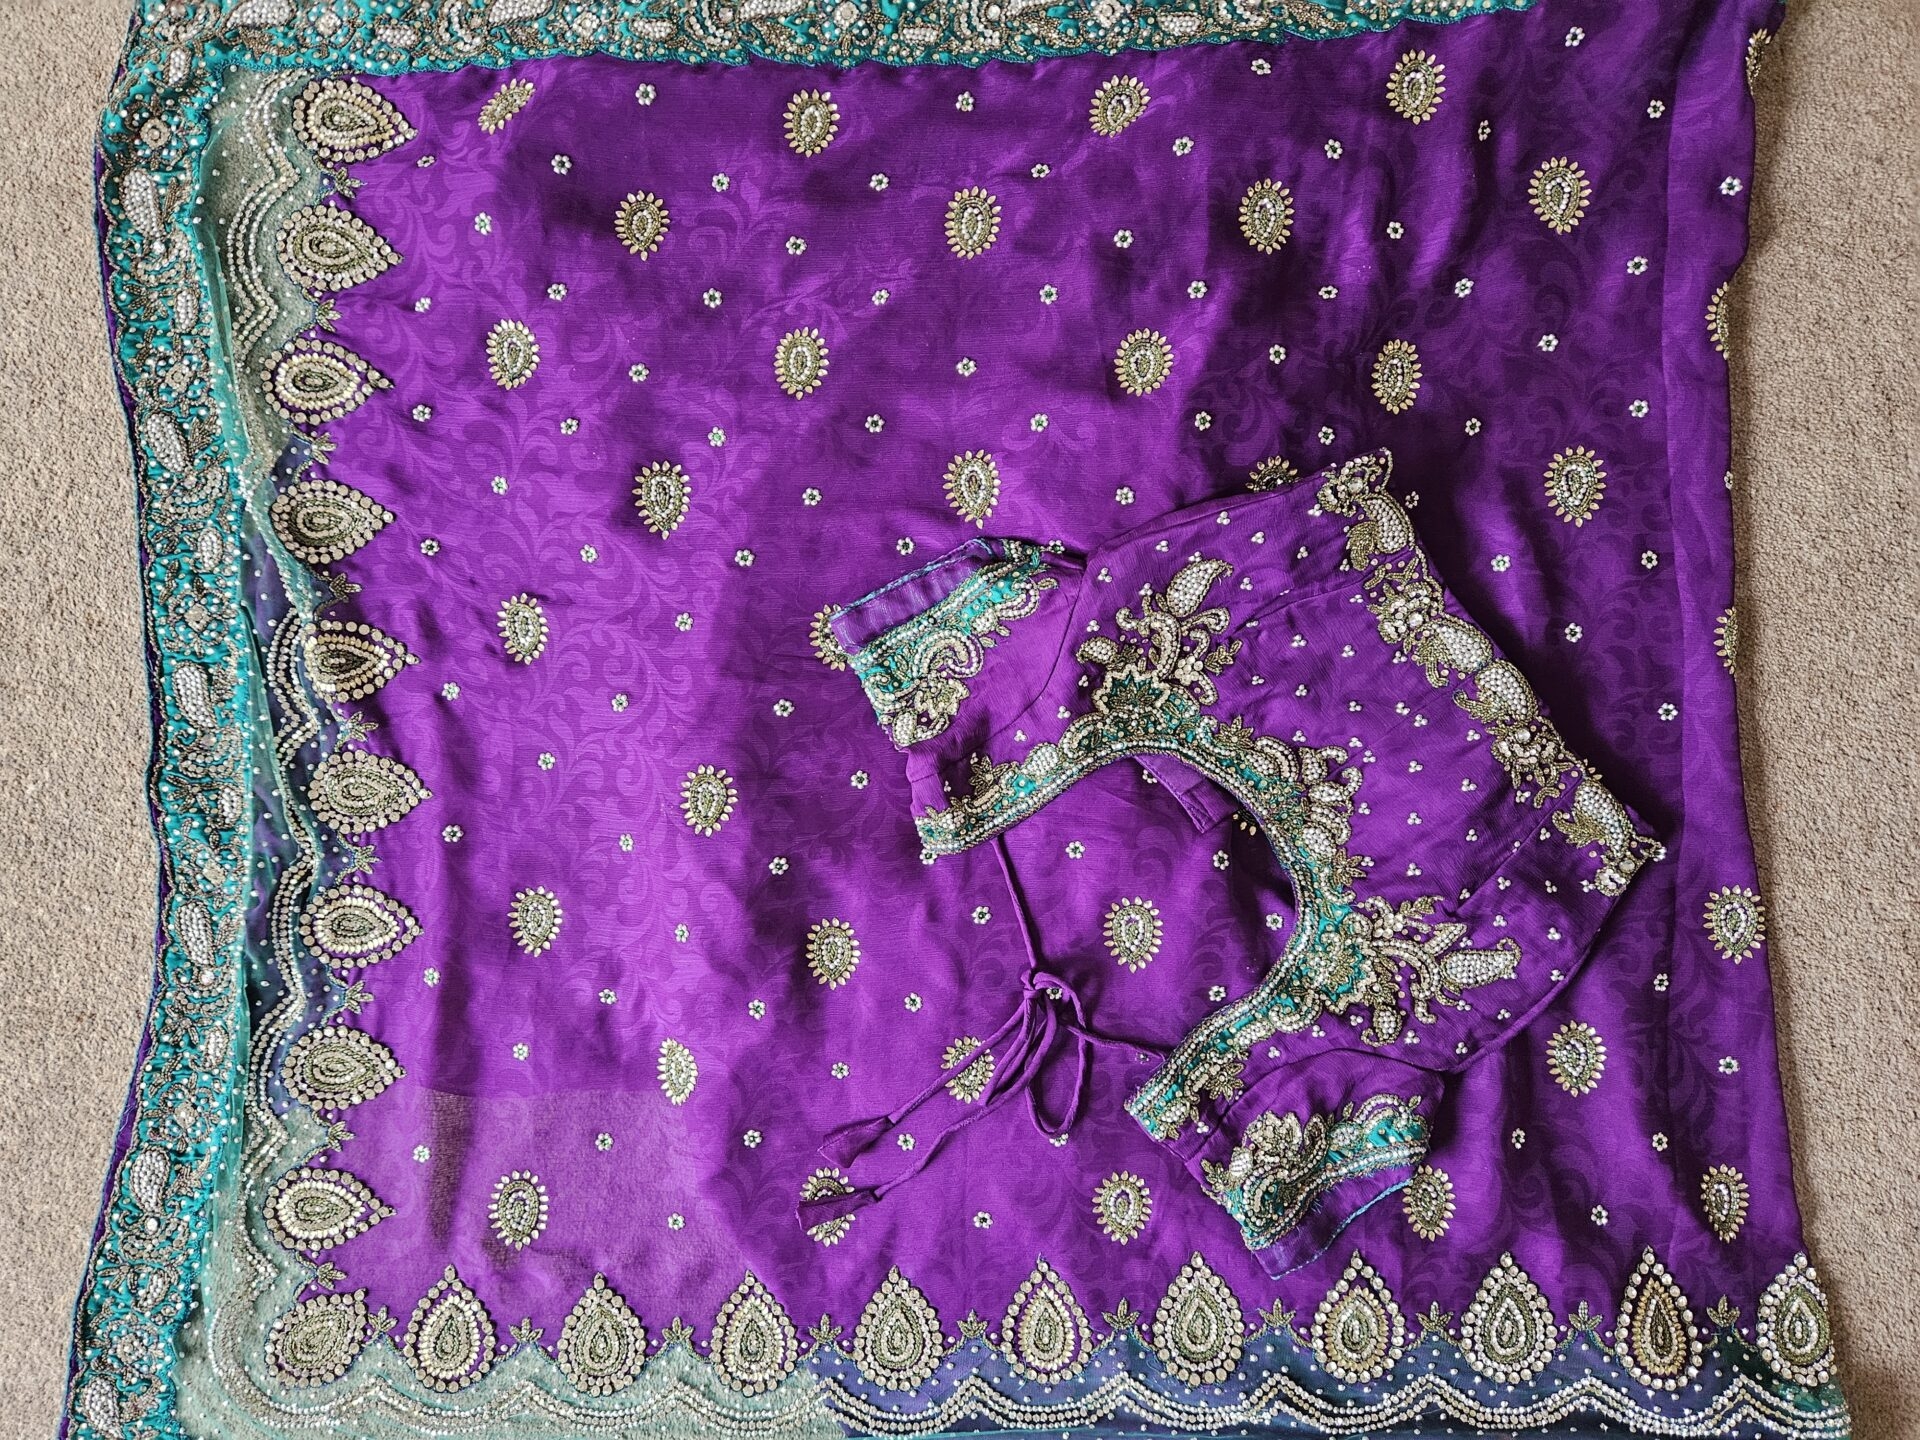 Beautiful chiffon sari & blouse